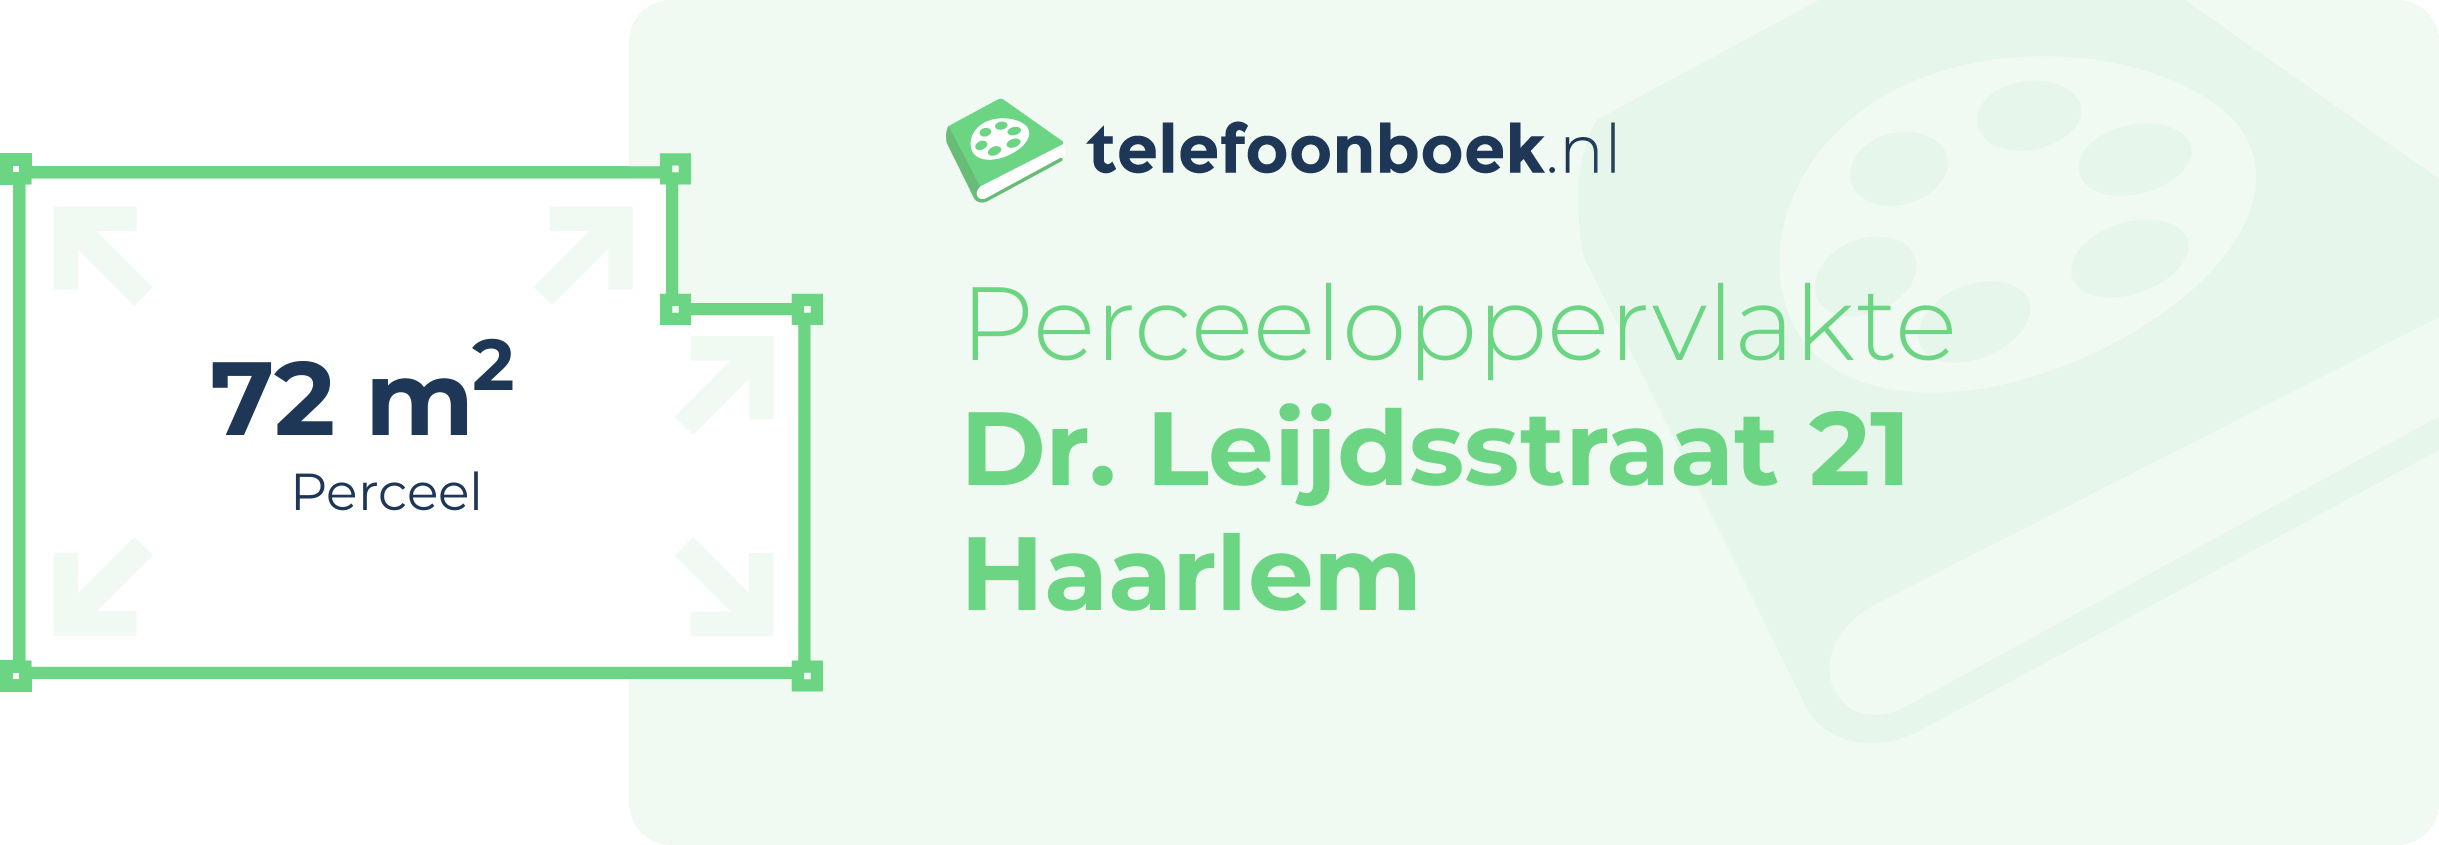 Perceeloppervlakte Dr. Leijdsstraat 21 Haarlem